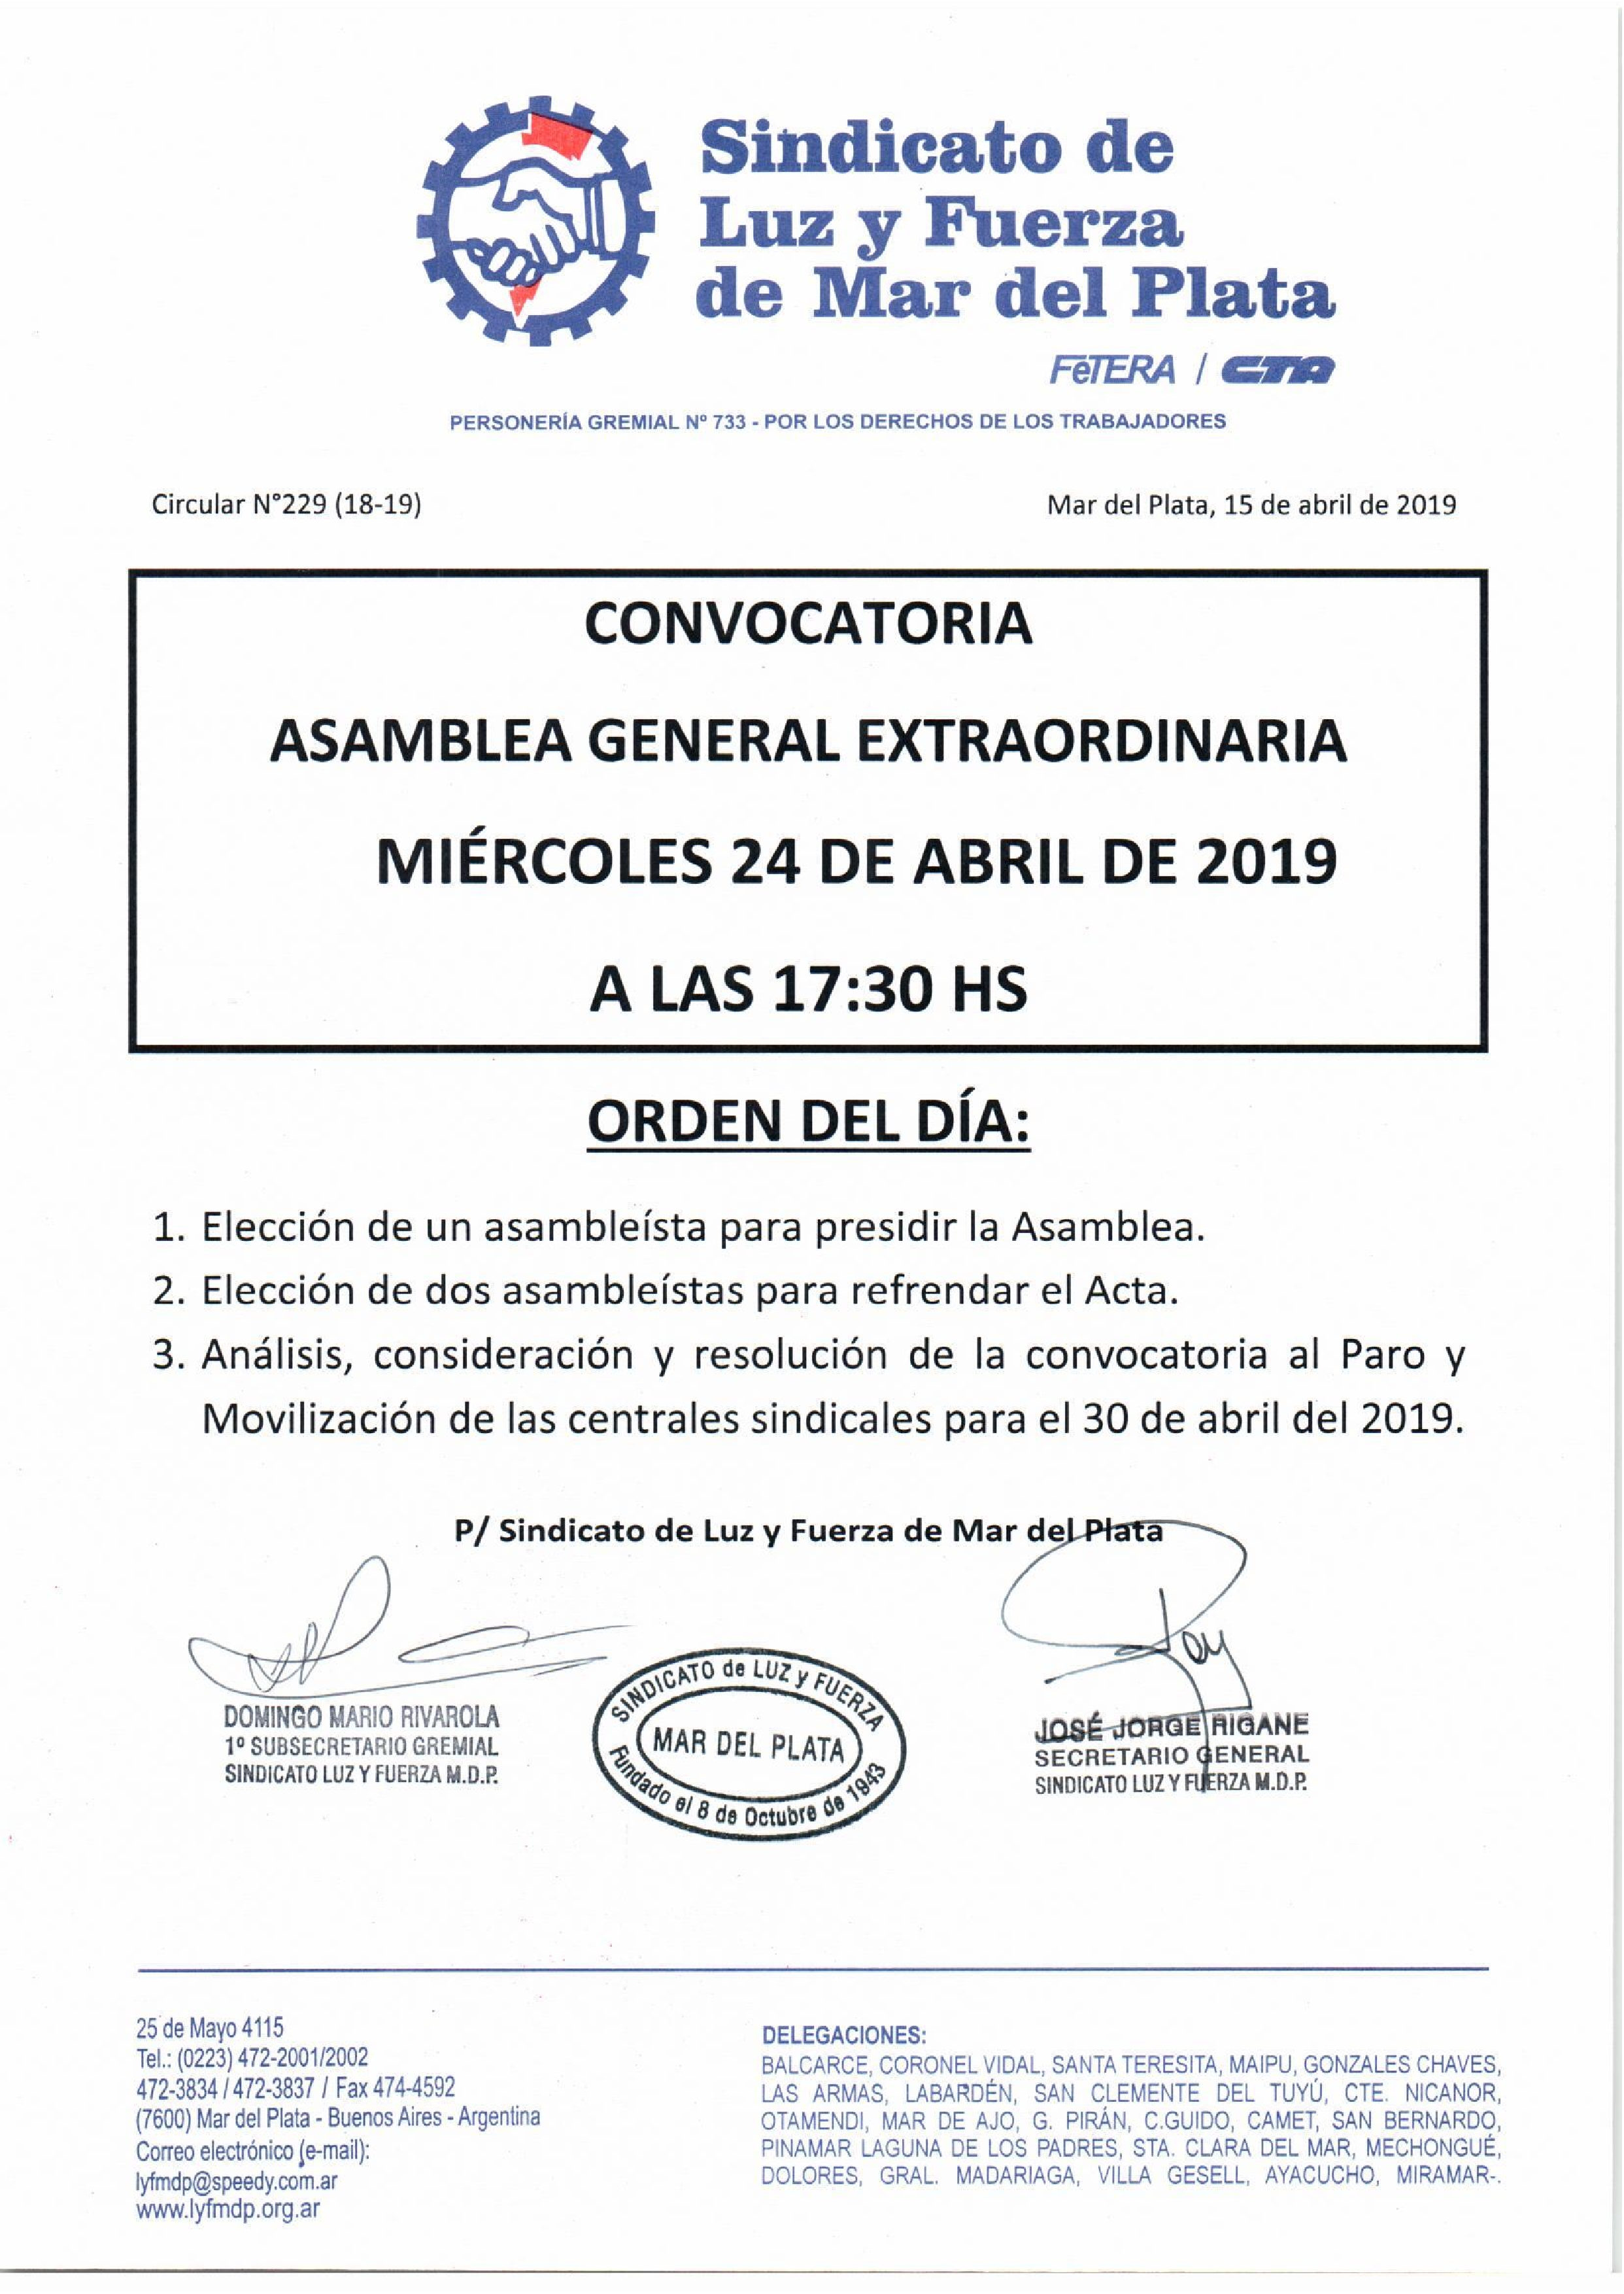 CONVOCATORIA ASAMBLEA GENERAL EXTRAORDINARIA 24.4.19